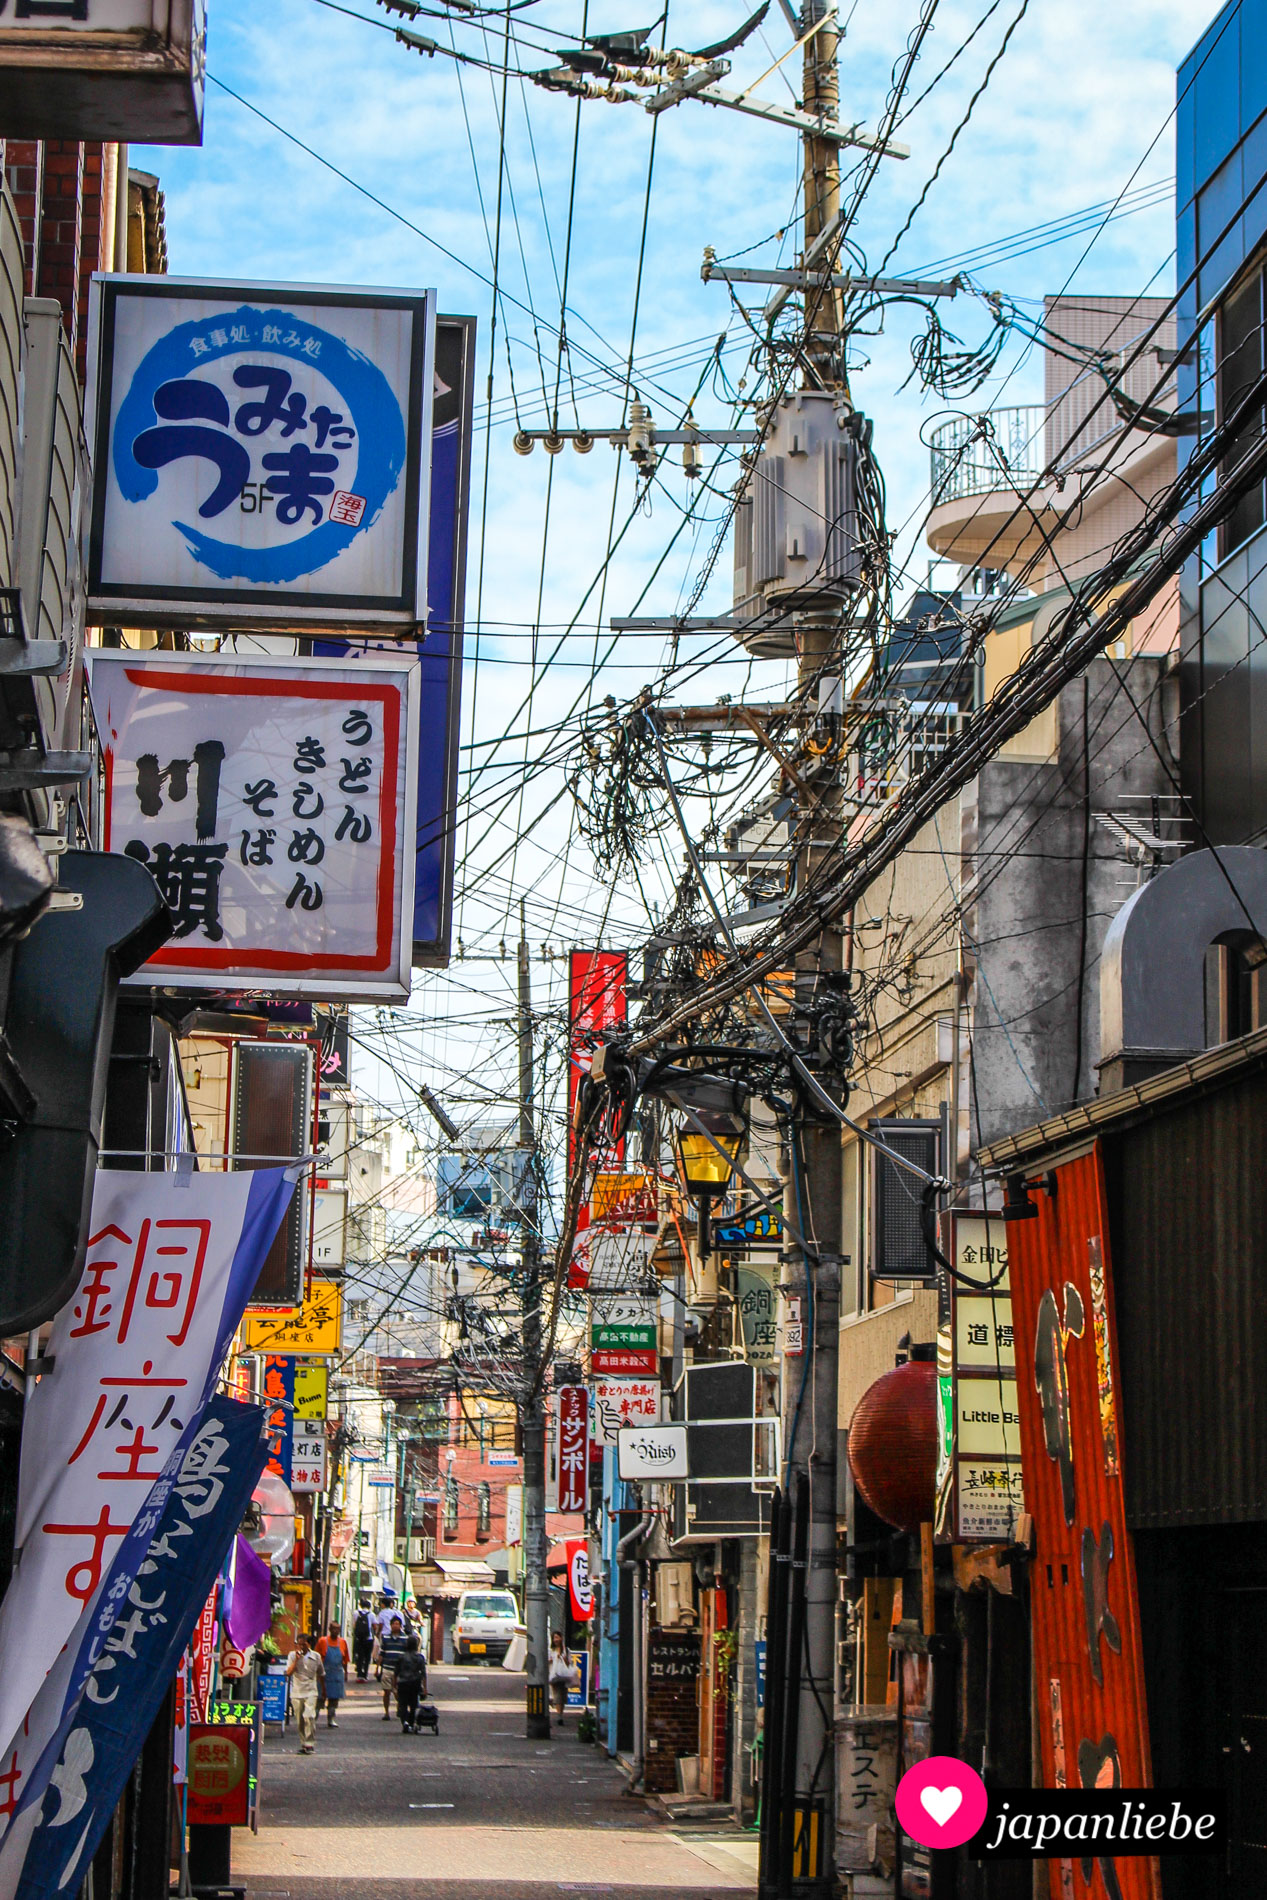 Jede Menge Stromleitungen zeihen sich über die Straßen von Nagasaki.